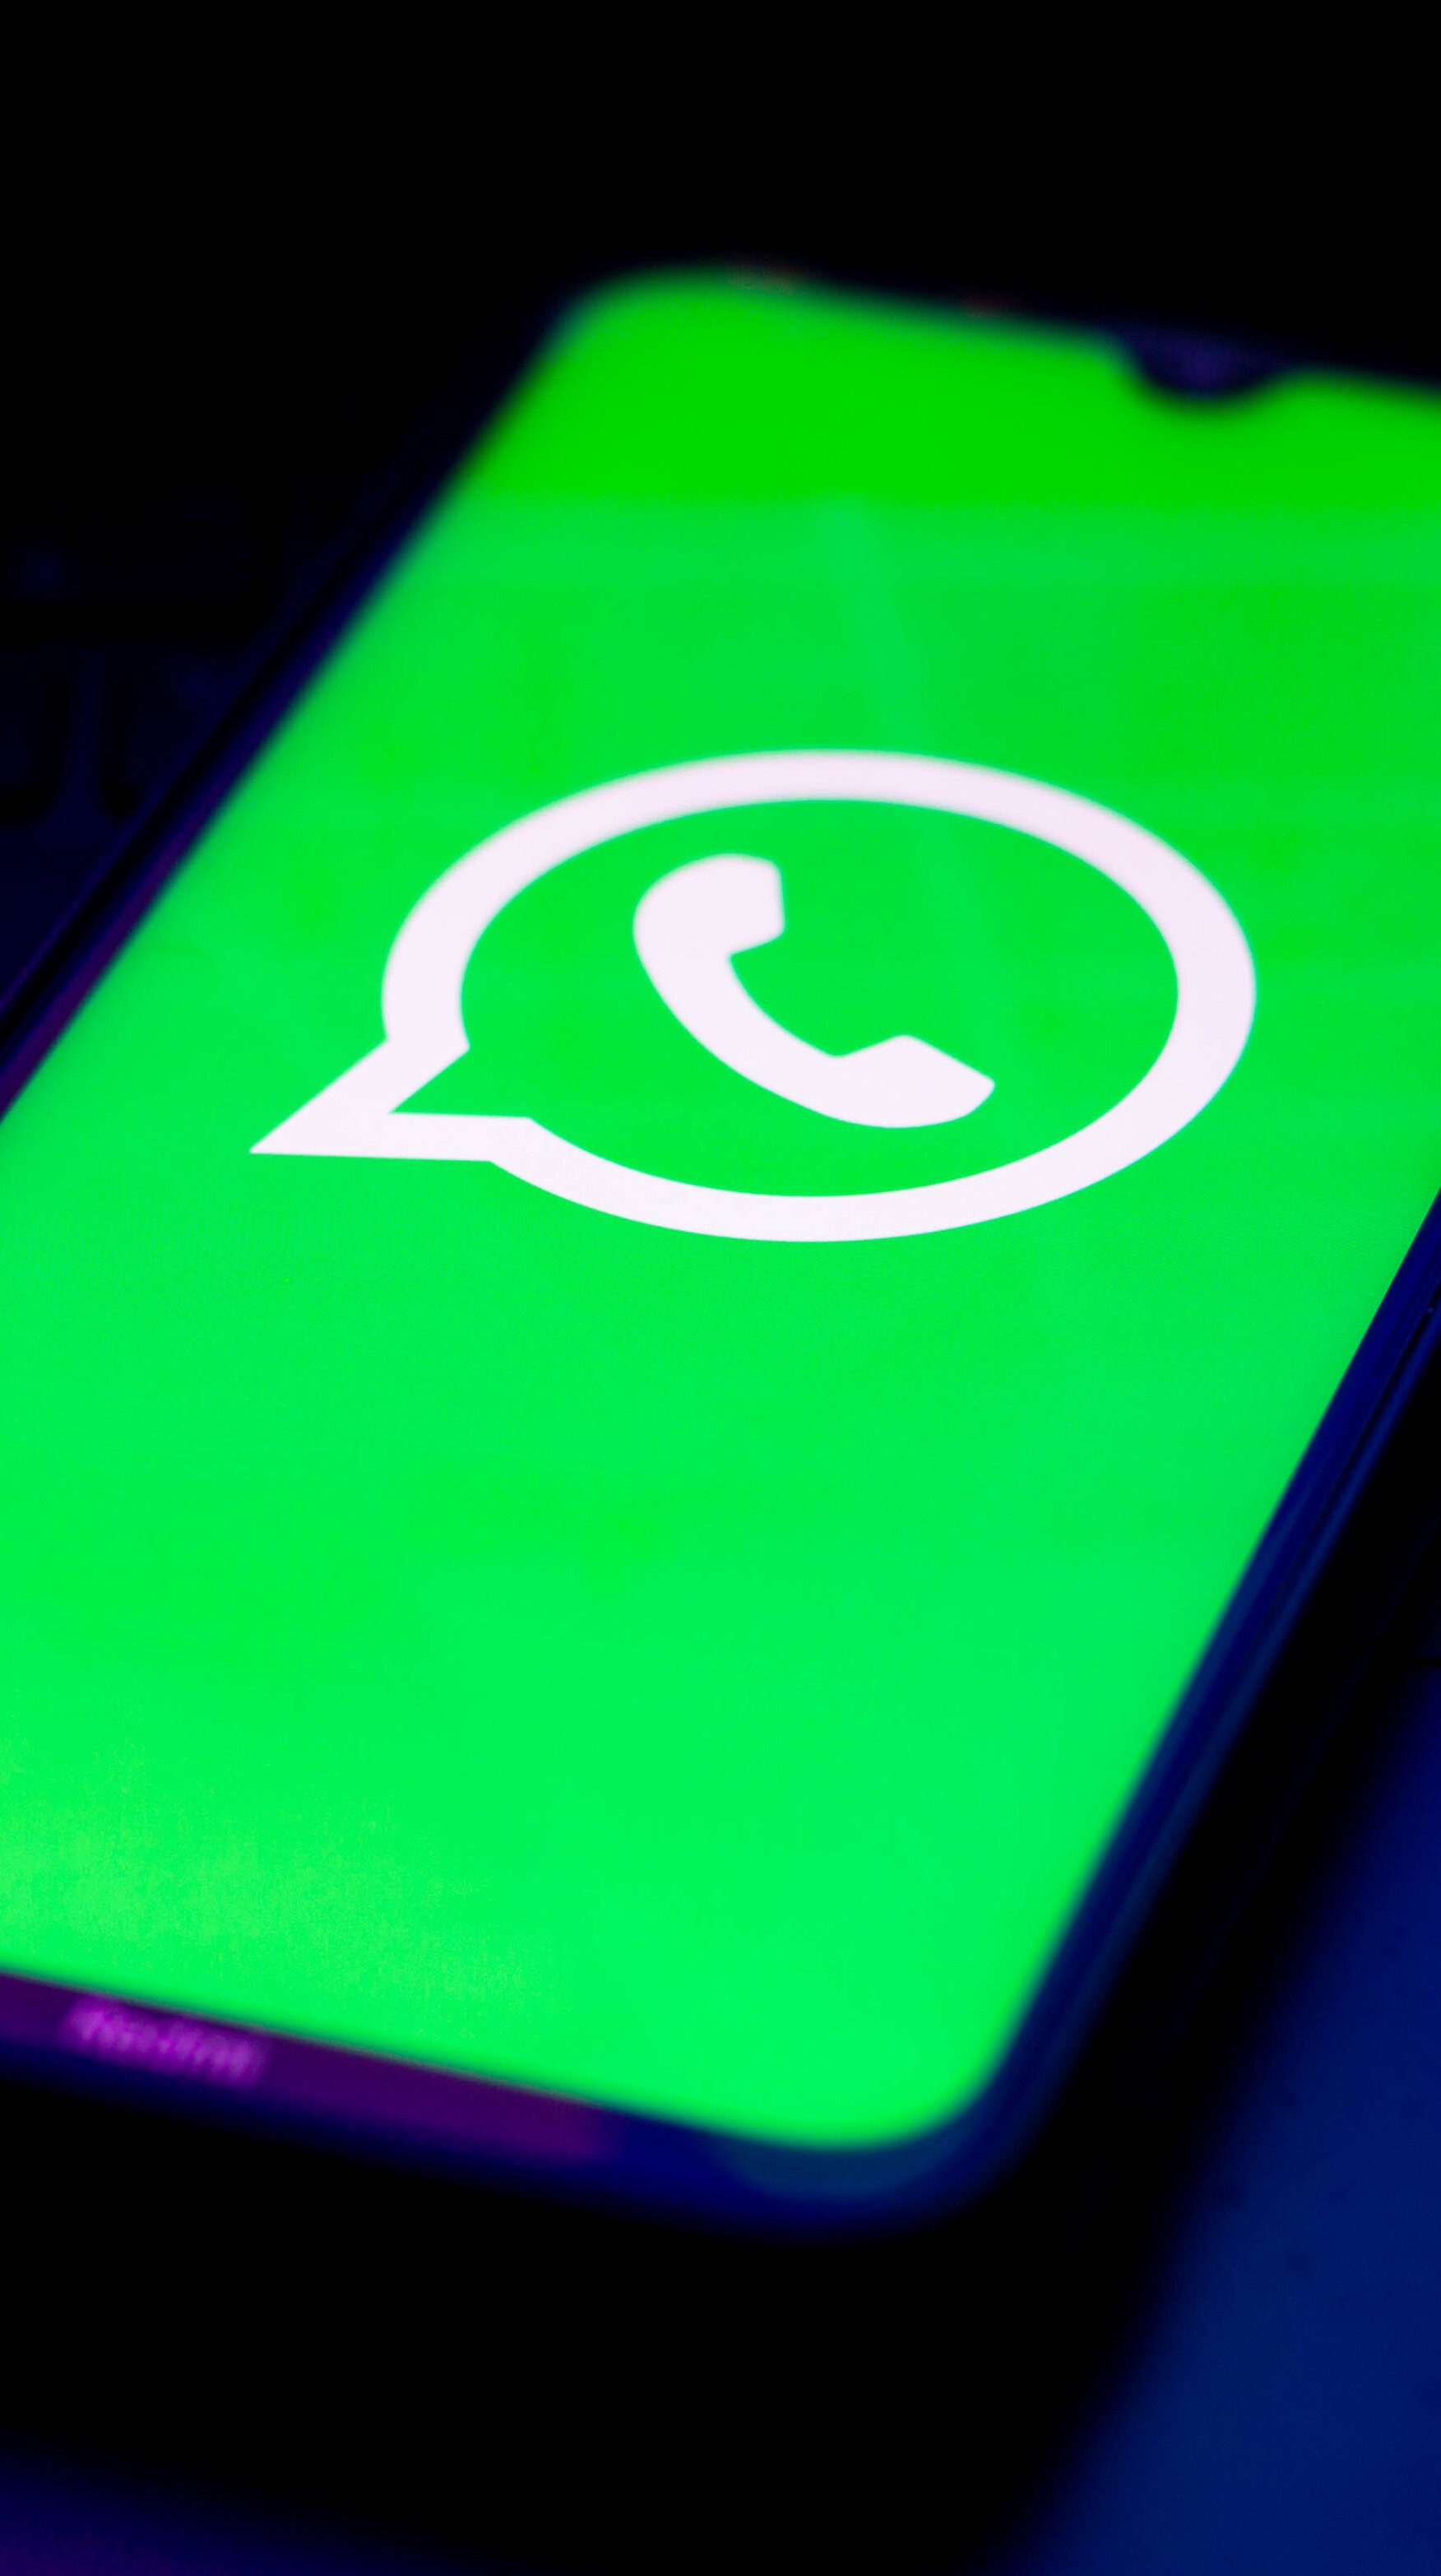 7 gírias do WhatsApp que você já deveria saber o que significam